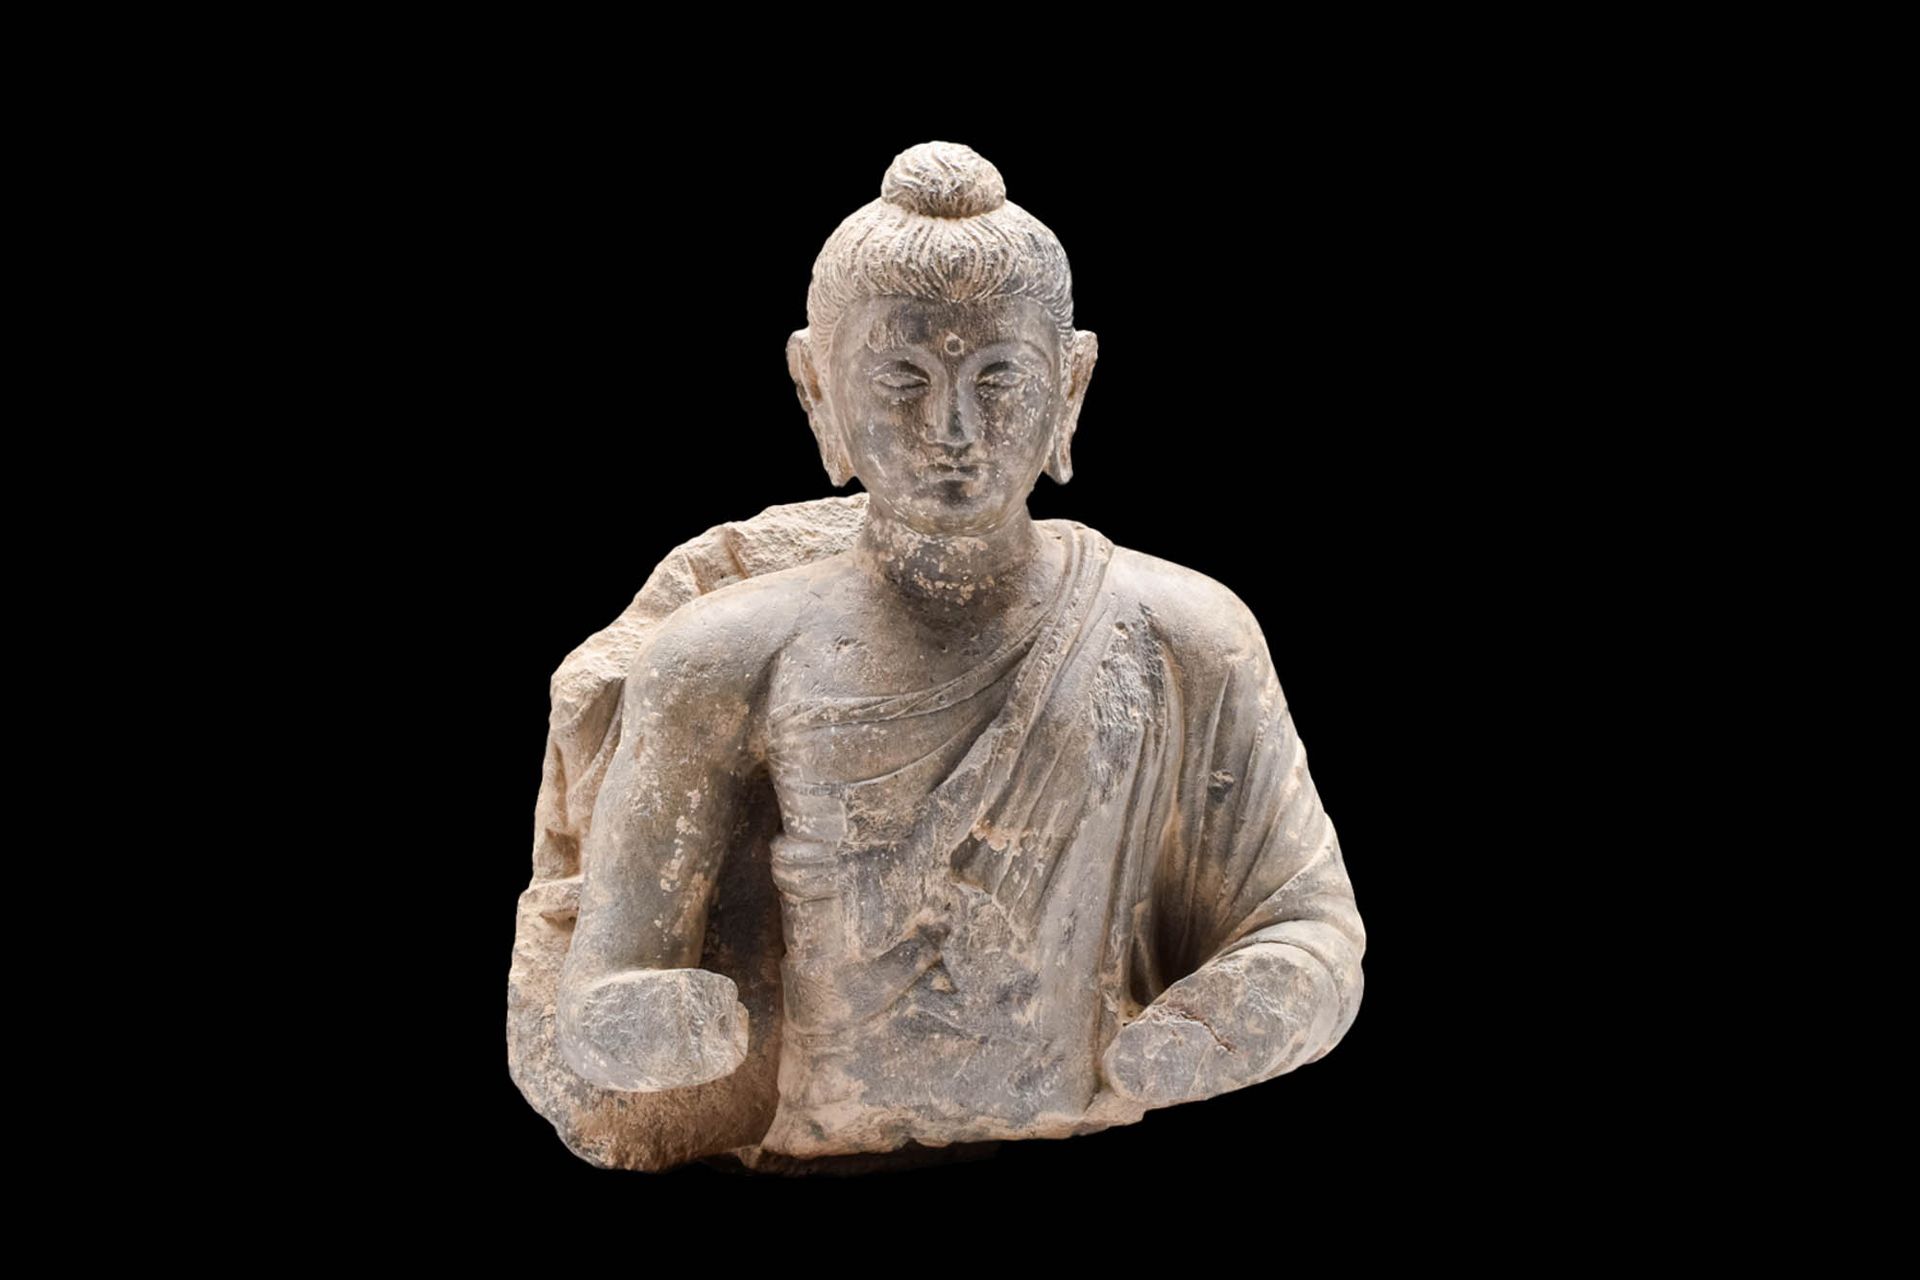 GANDHARAN SCHIST TORSO OF BUDDHA 约公元 100 - 300 年。公元 100 - 300 年。
这是一件片岩石雕佛像躯干。佛像&hellip;